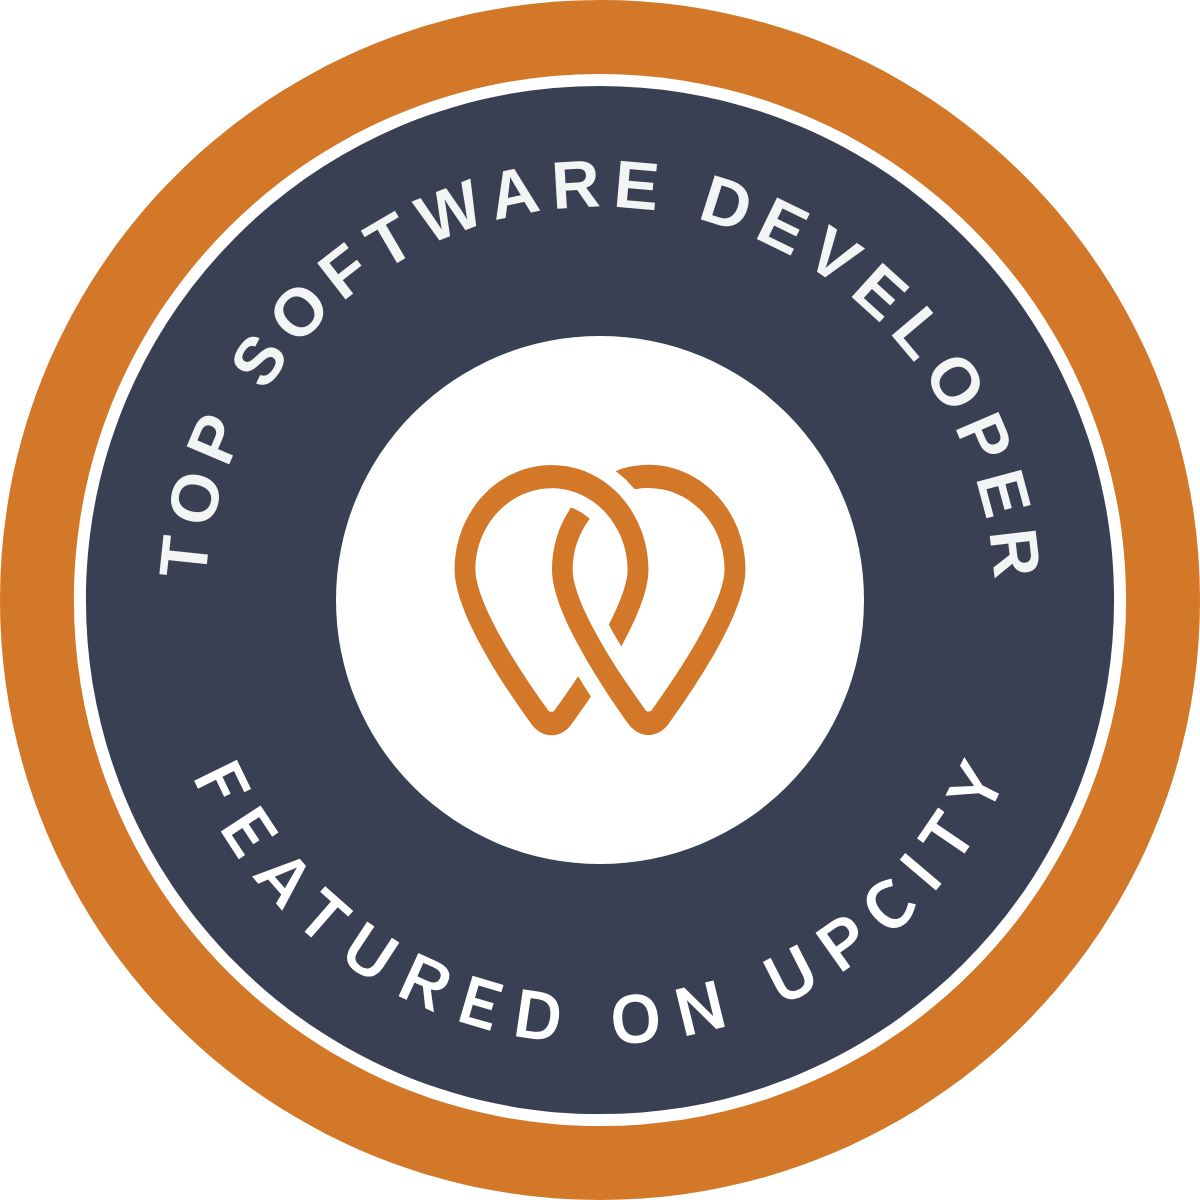 Upcity Marketplace Badge/Awards